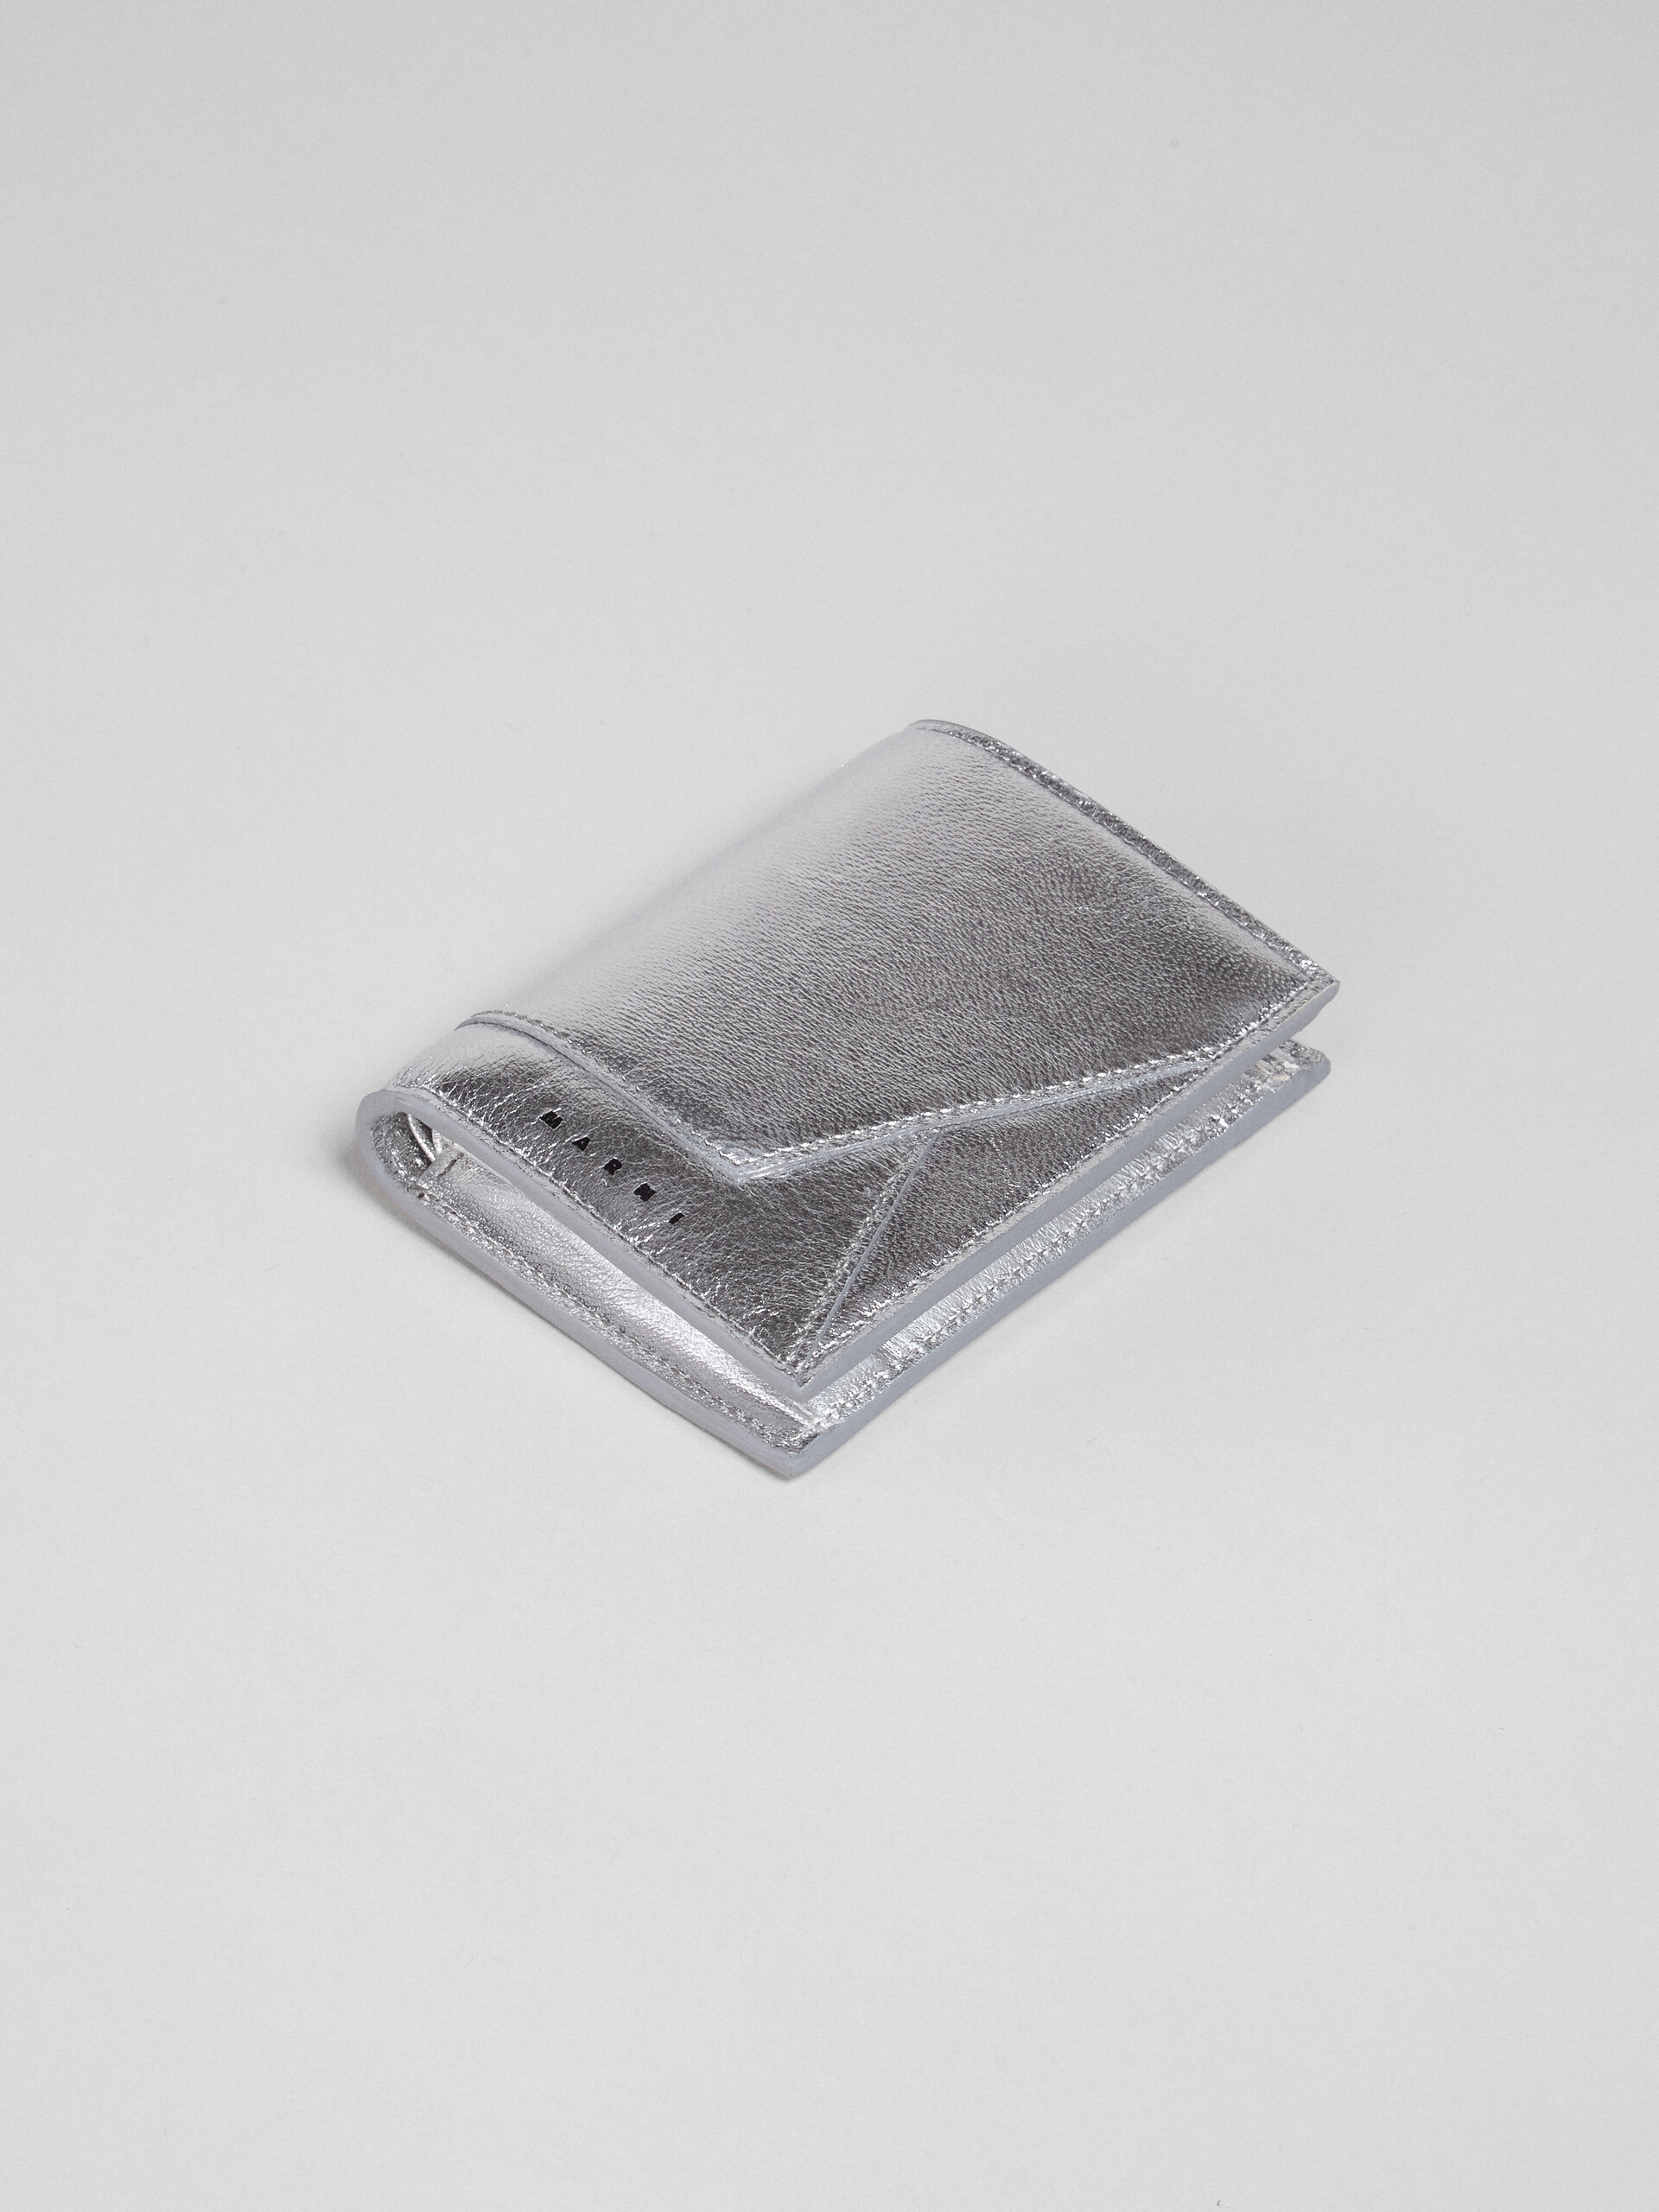 シルバーメタリック調 ナッパレザー二つ折りウォレット - 財布 - Image 4